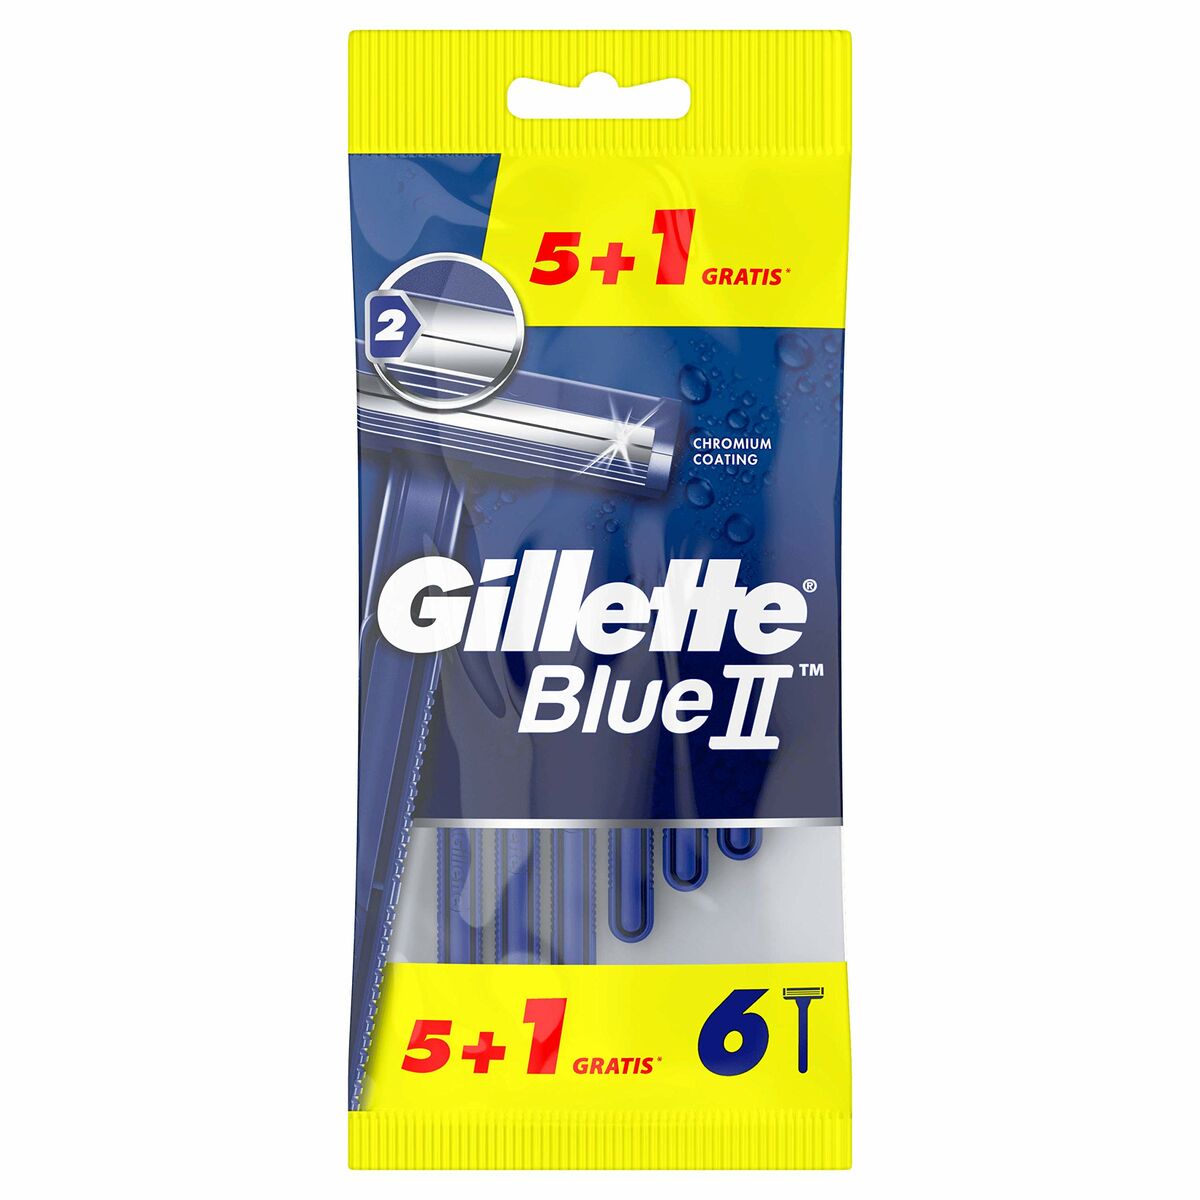 Handrasierer Gillette Blue II 6 Einheiten